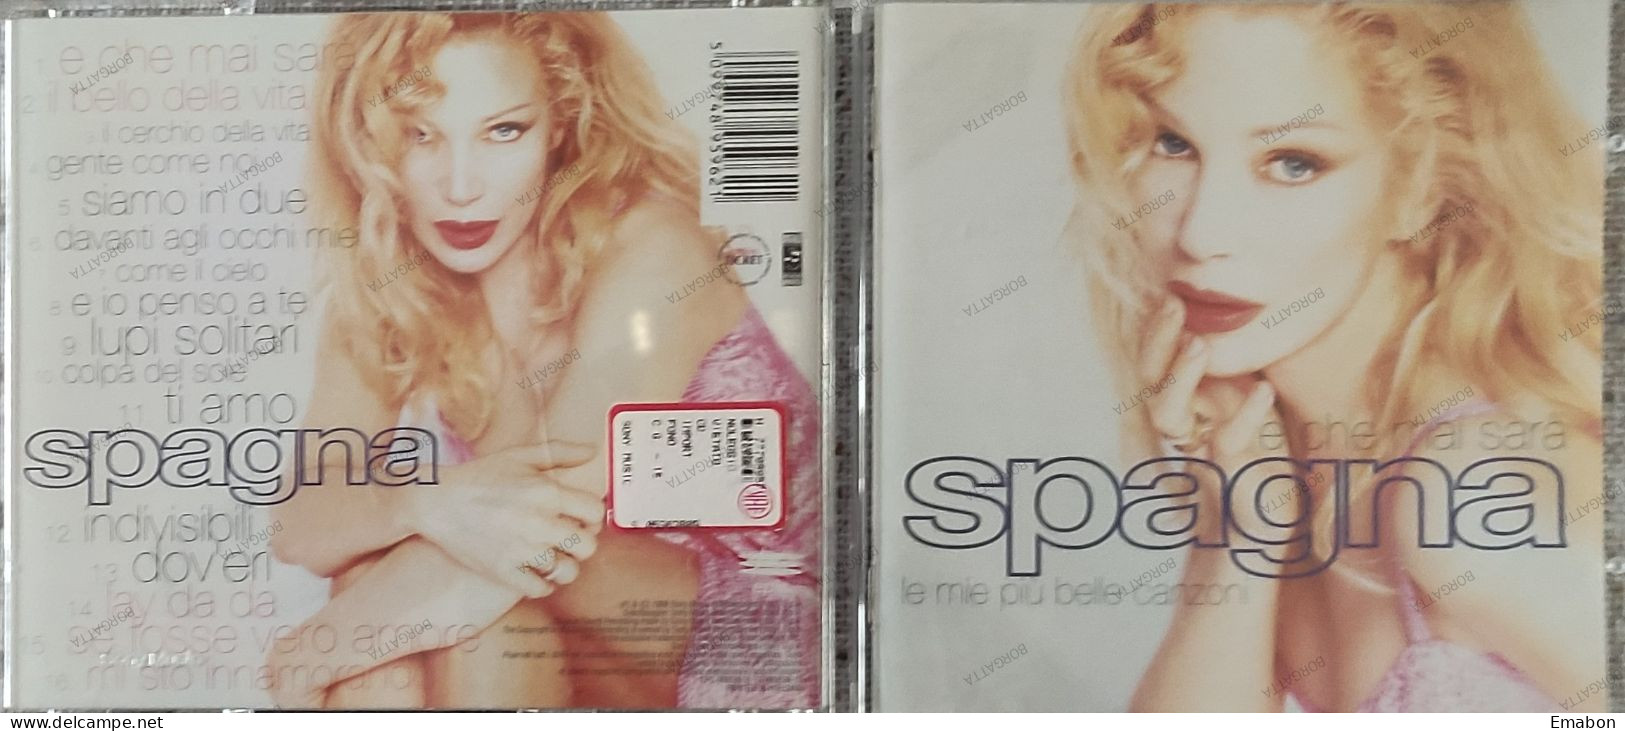 BORGATTA - ITALIANA  - Cd  IVANA SPAGNA - E CHE MAI SARA' - SONY MUSIC 1998 -  USATO In Buono Stato - Otros - Canción Italiana